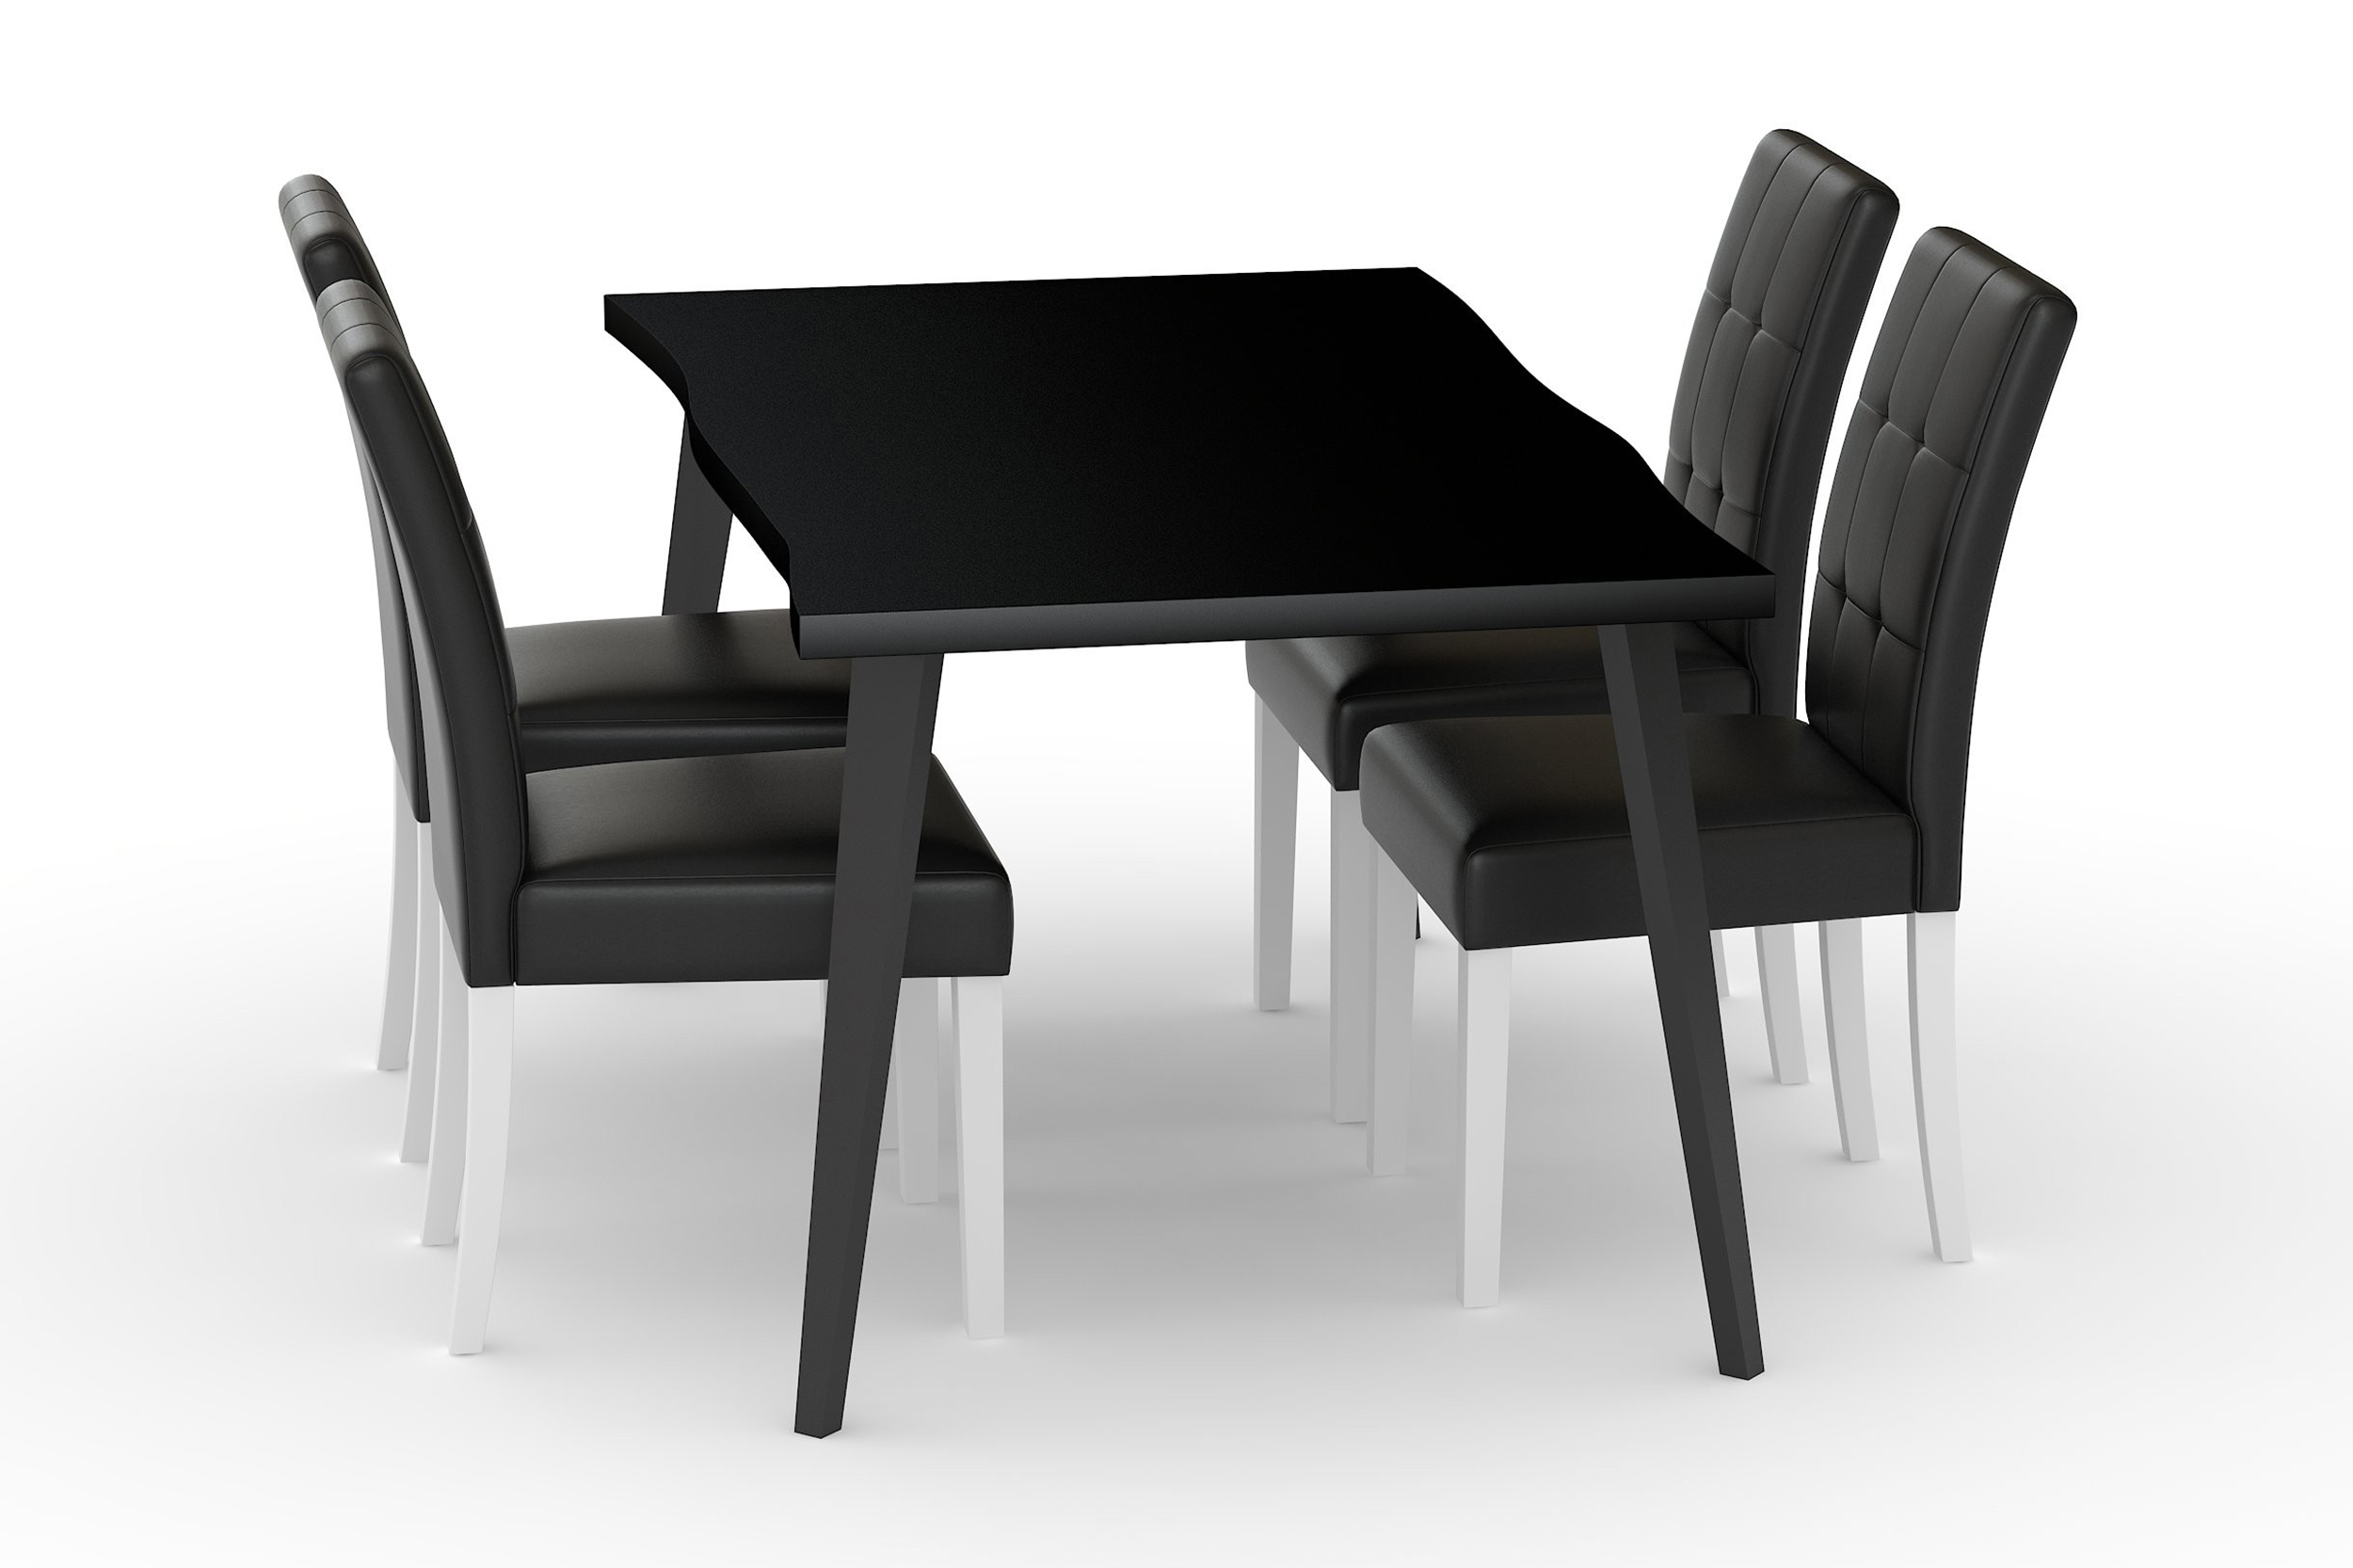 Ruokapöytä Luxiva 180 cm 4 Leo ruokatuolia Keinonahka - Musta/Tummanruskea